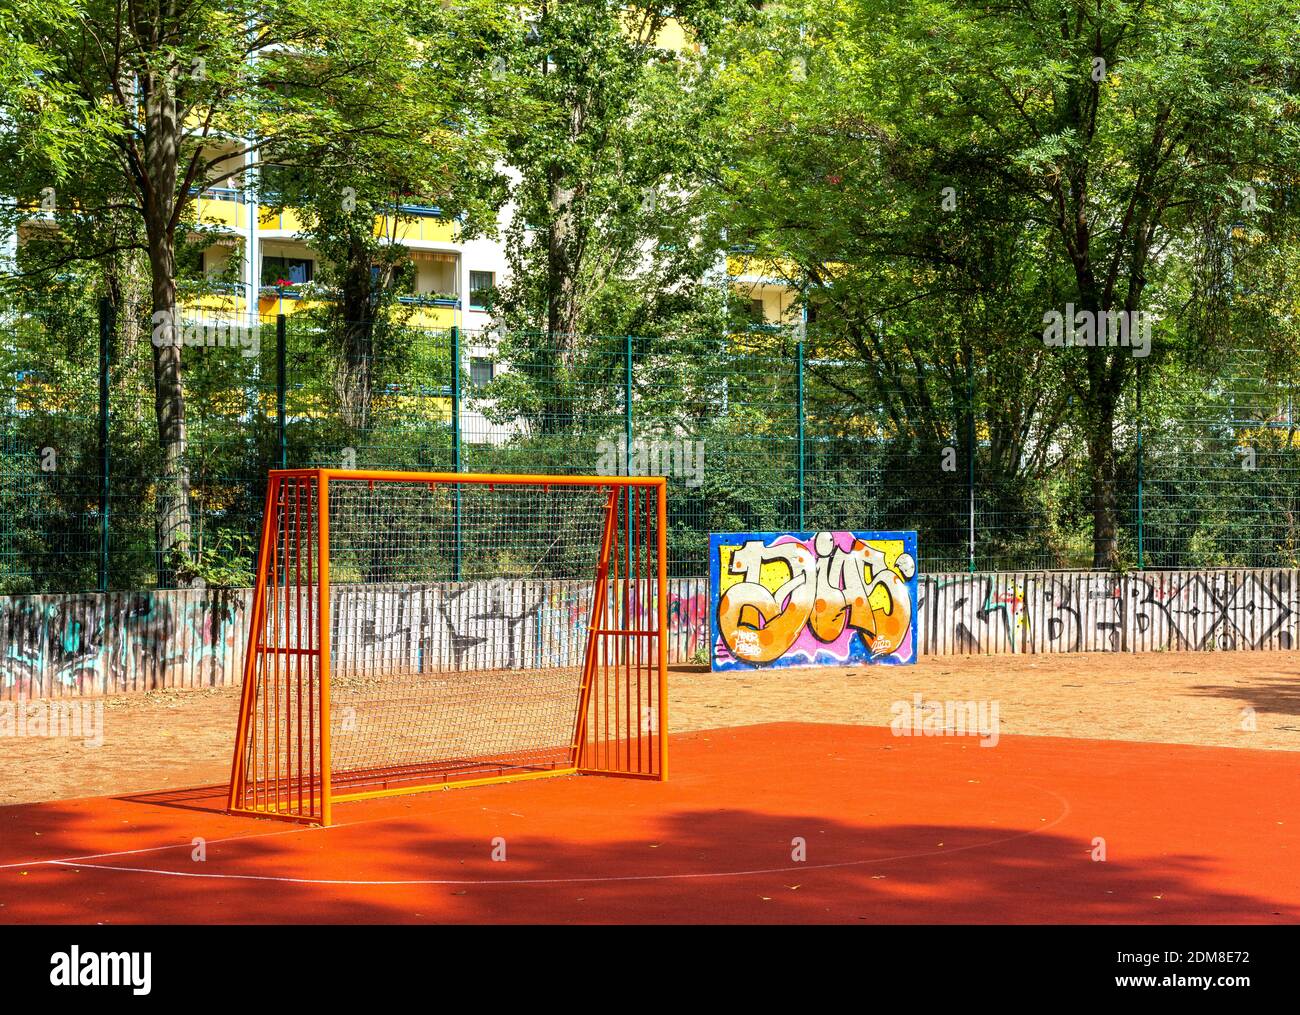 Orange Football Goal On A Playground Stock Photo